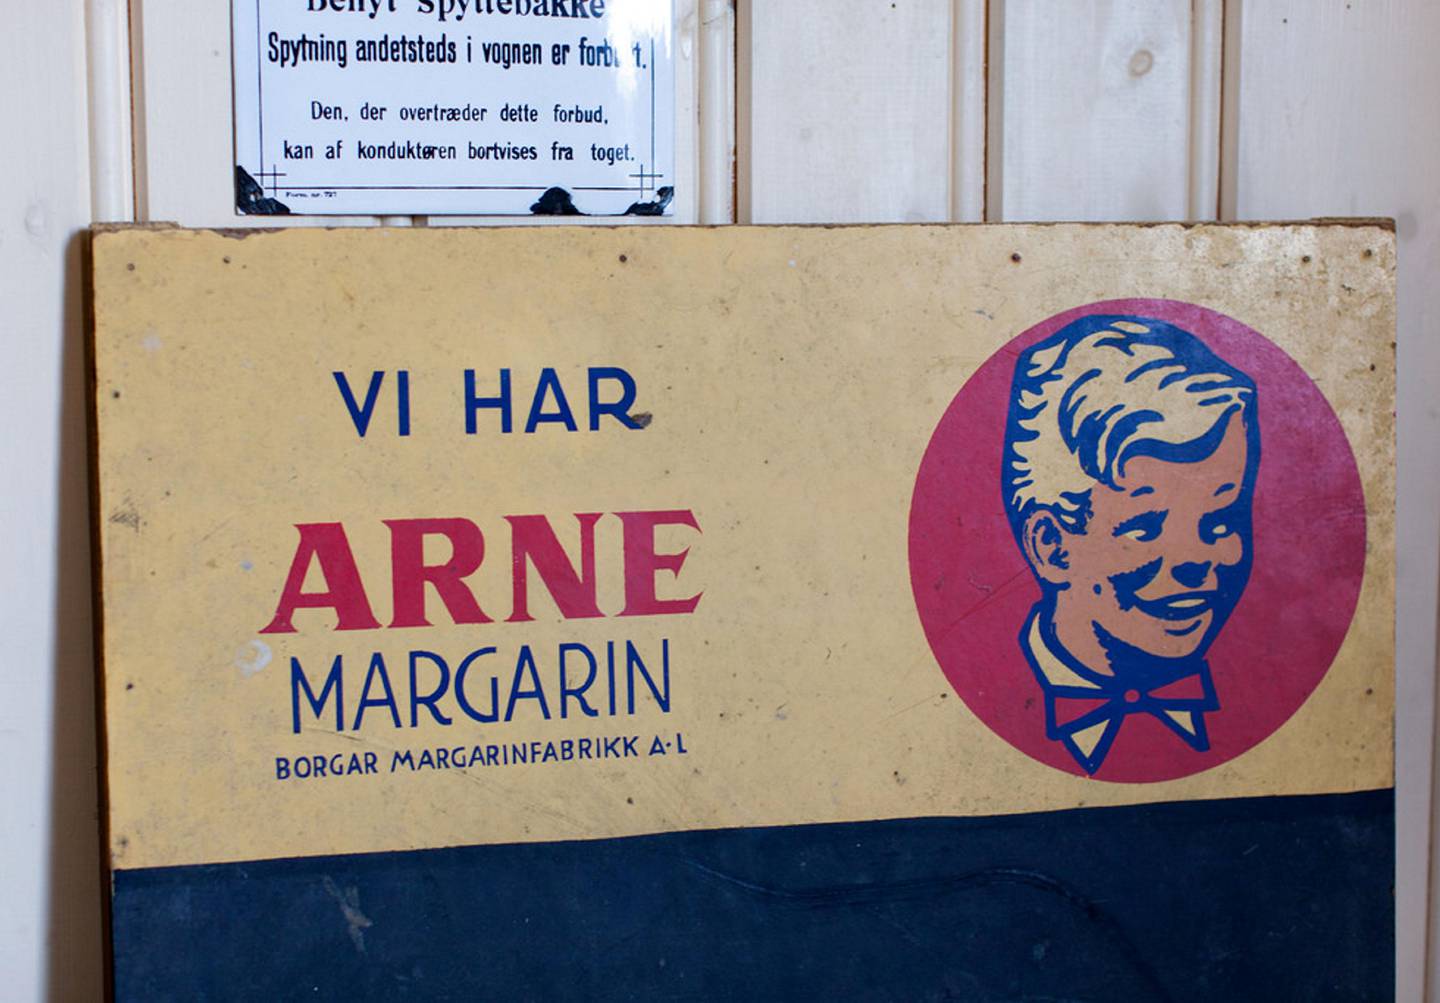 MERKENAVN: Arne Margarin ble et av de sterkeste merkenavnene til Borgar Margarinfabrikk. FOTO: FREDRIKSTAD MUSEUM